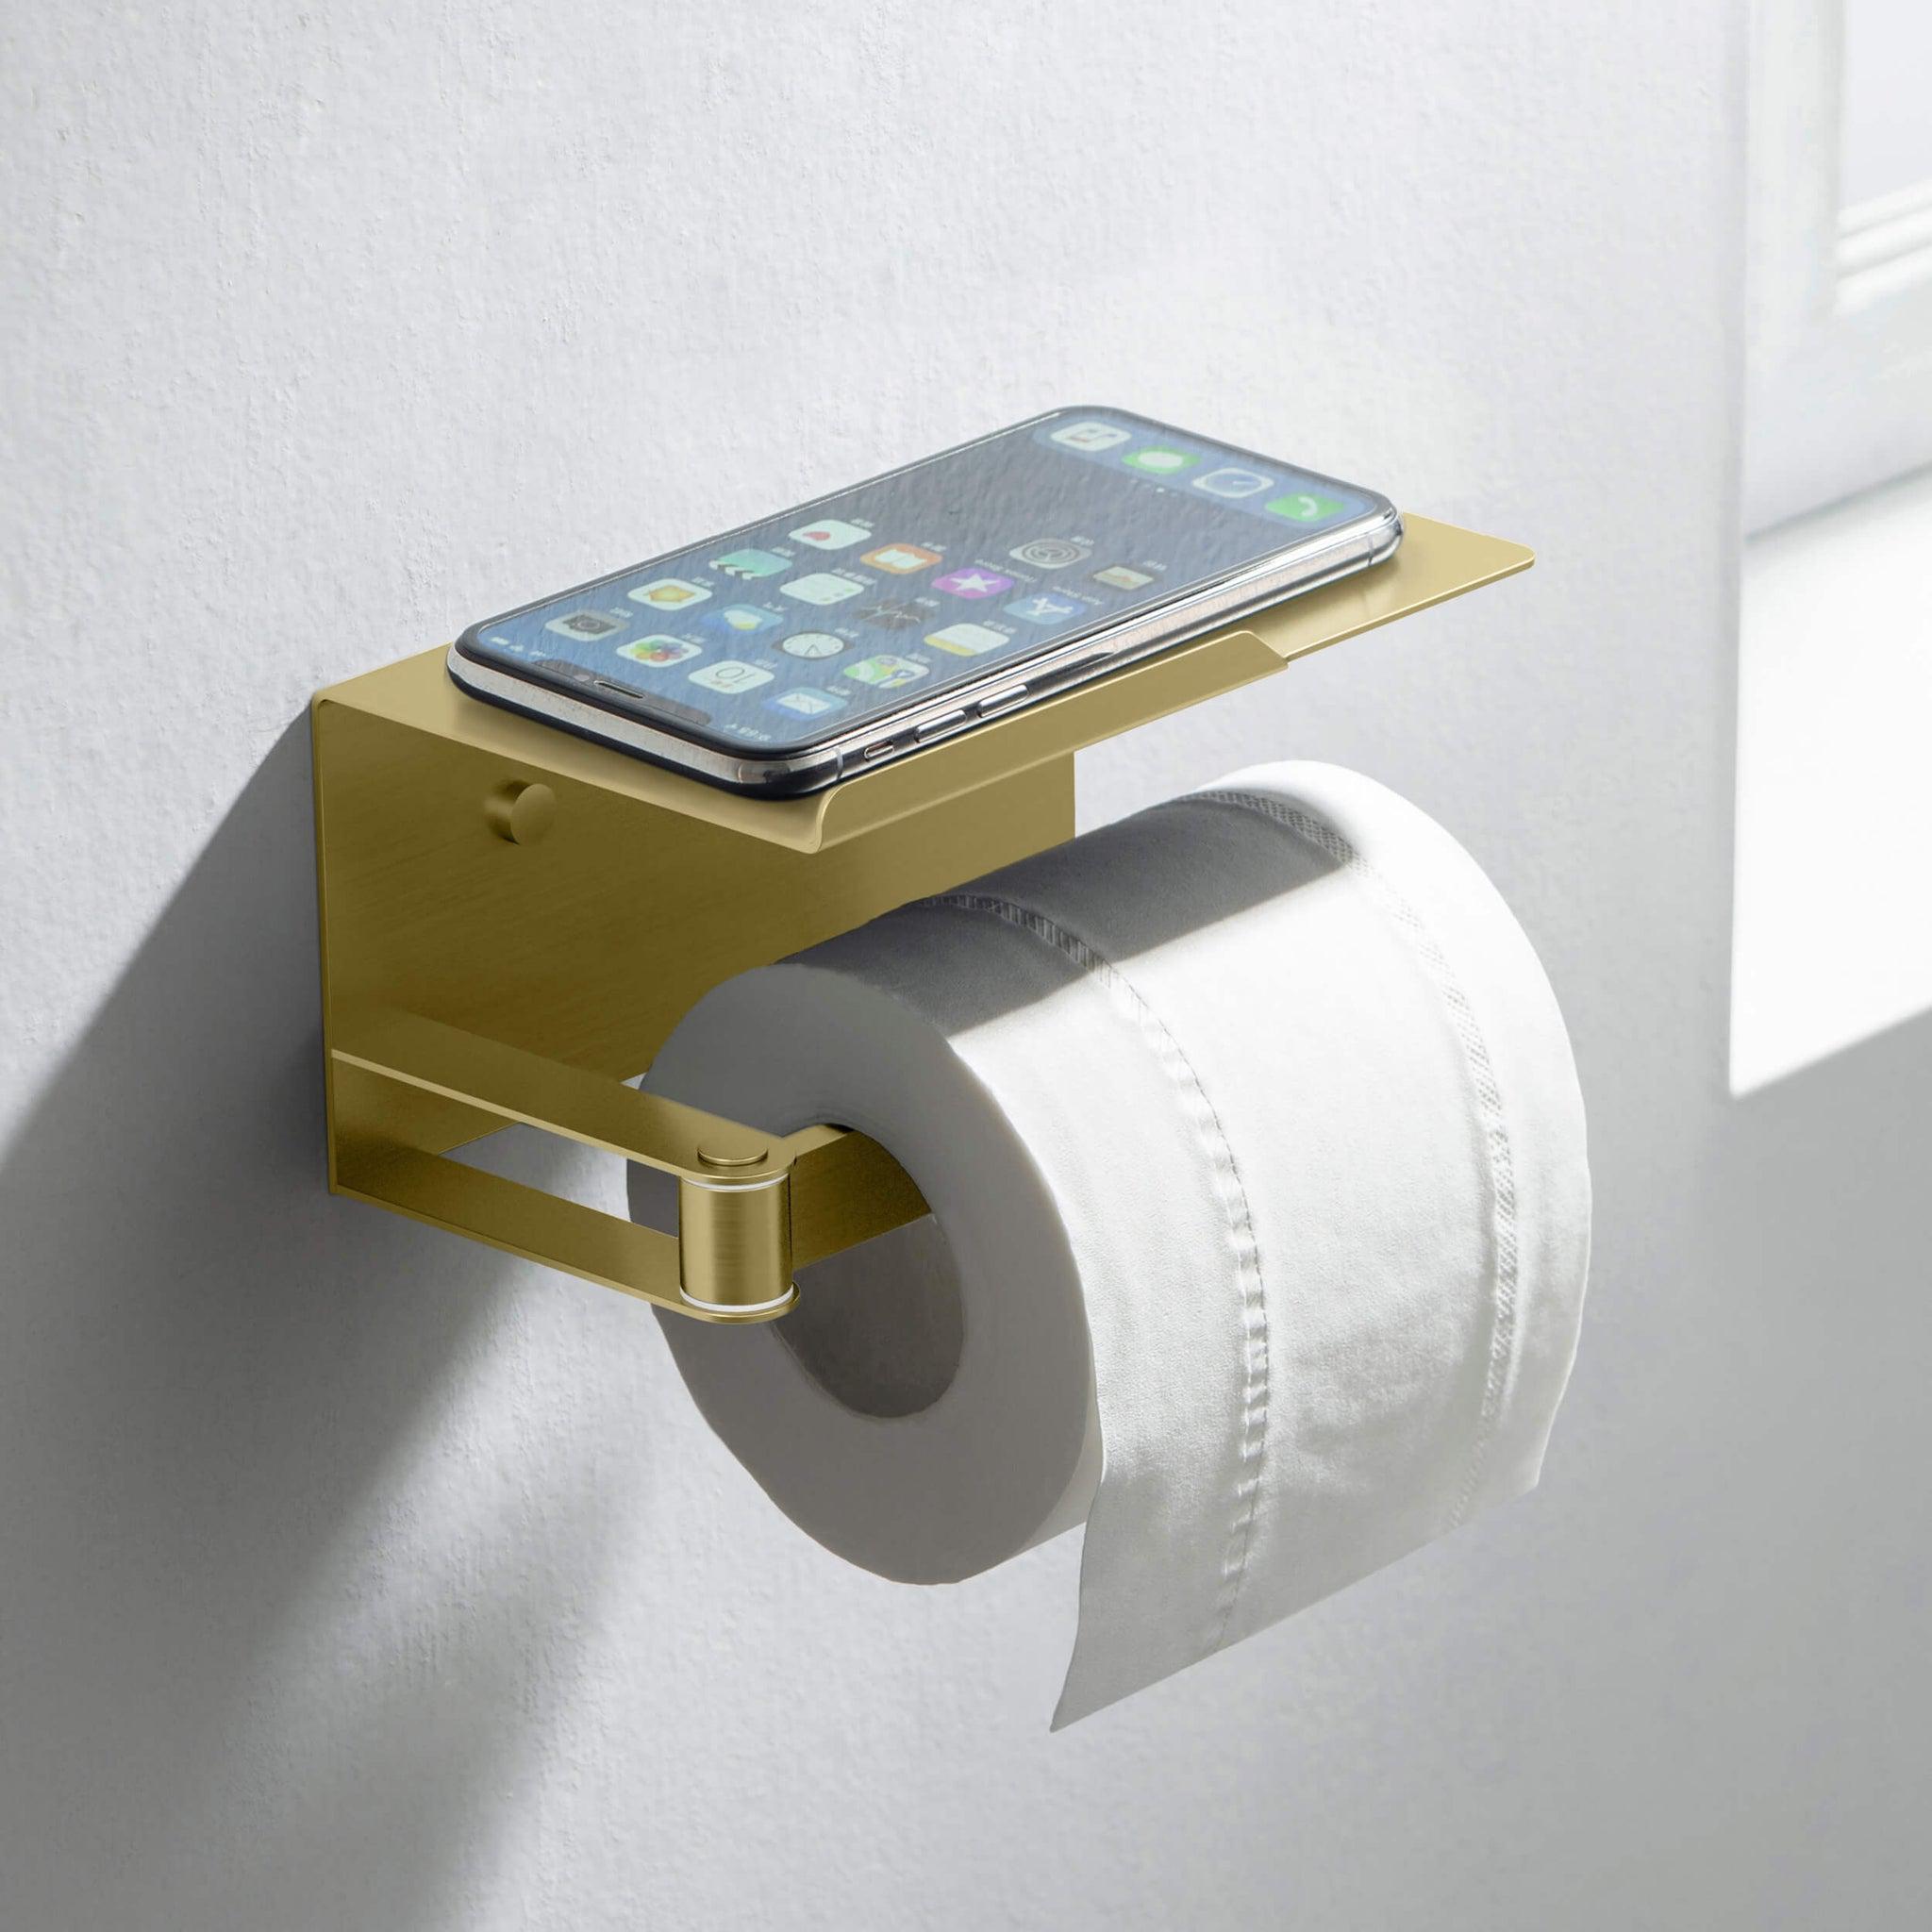 KIBI, KIBI Deco Bathroom Toilet Paper Holder With Platform in Brushed Gold Finish